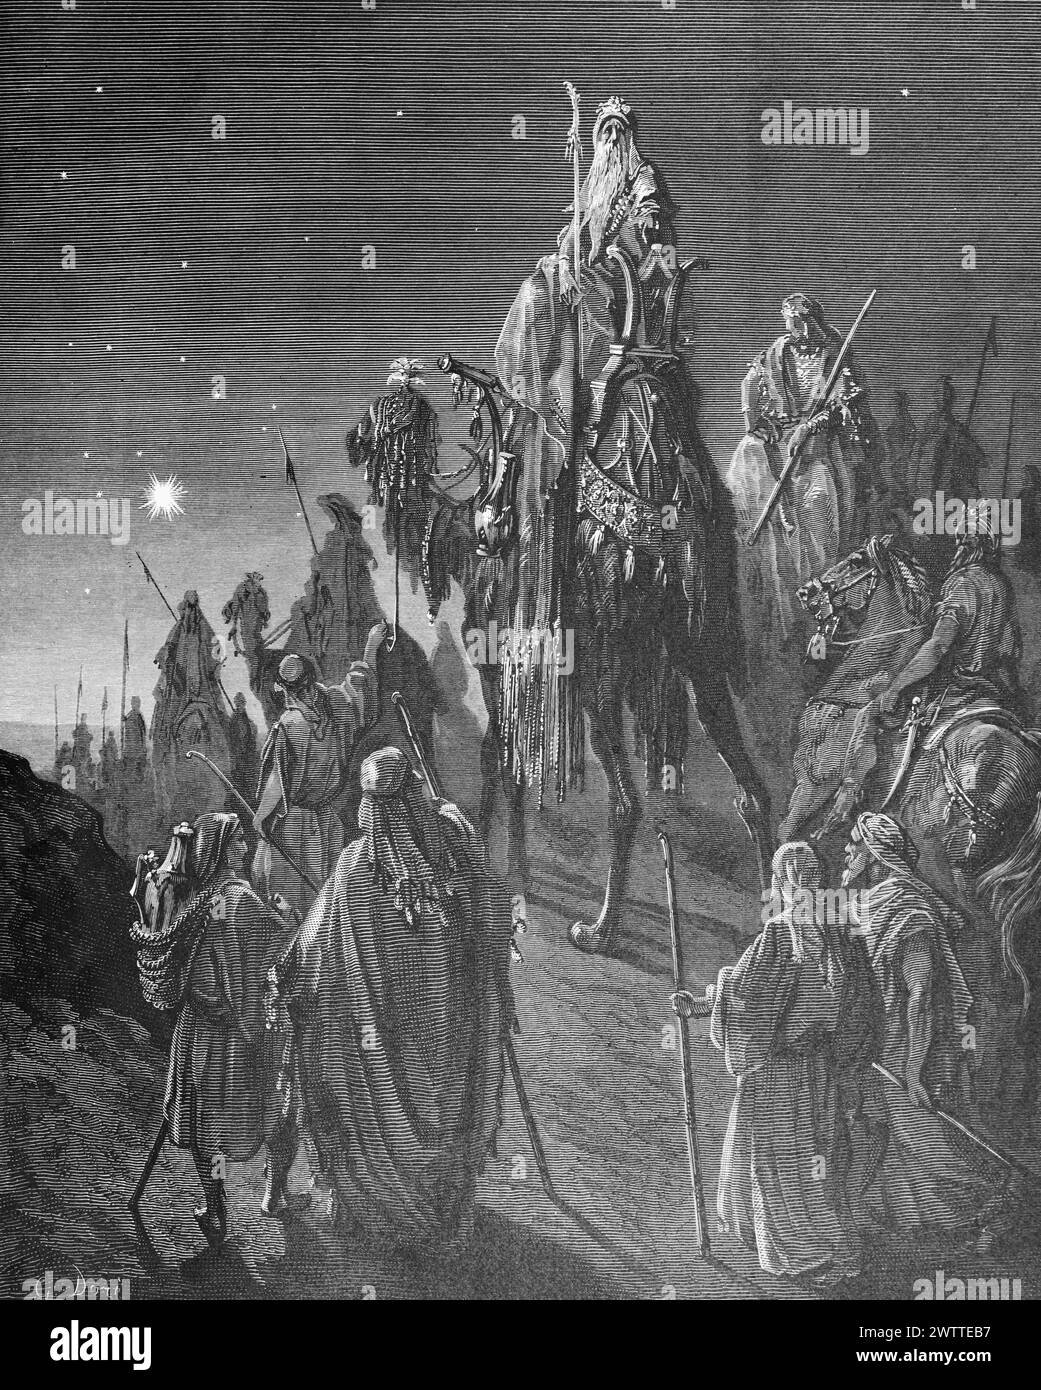 L'étoile des sages les guidant à Bethléem, ancien Testament, Bible, Matthieu 2 , ilustration historique 1886 Banque D'Images